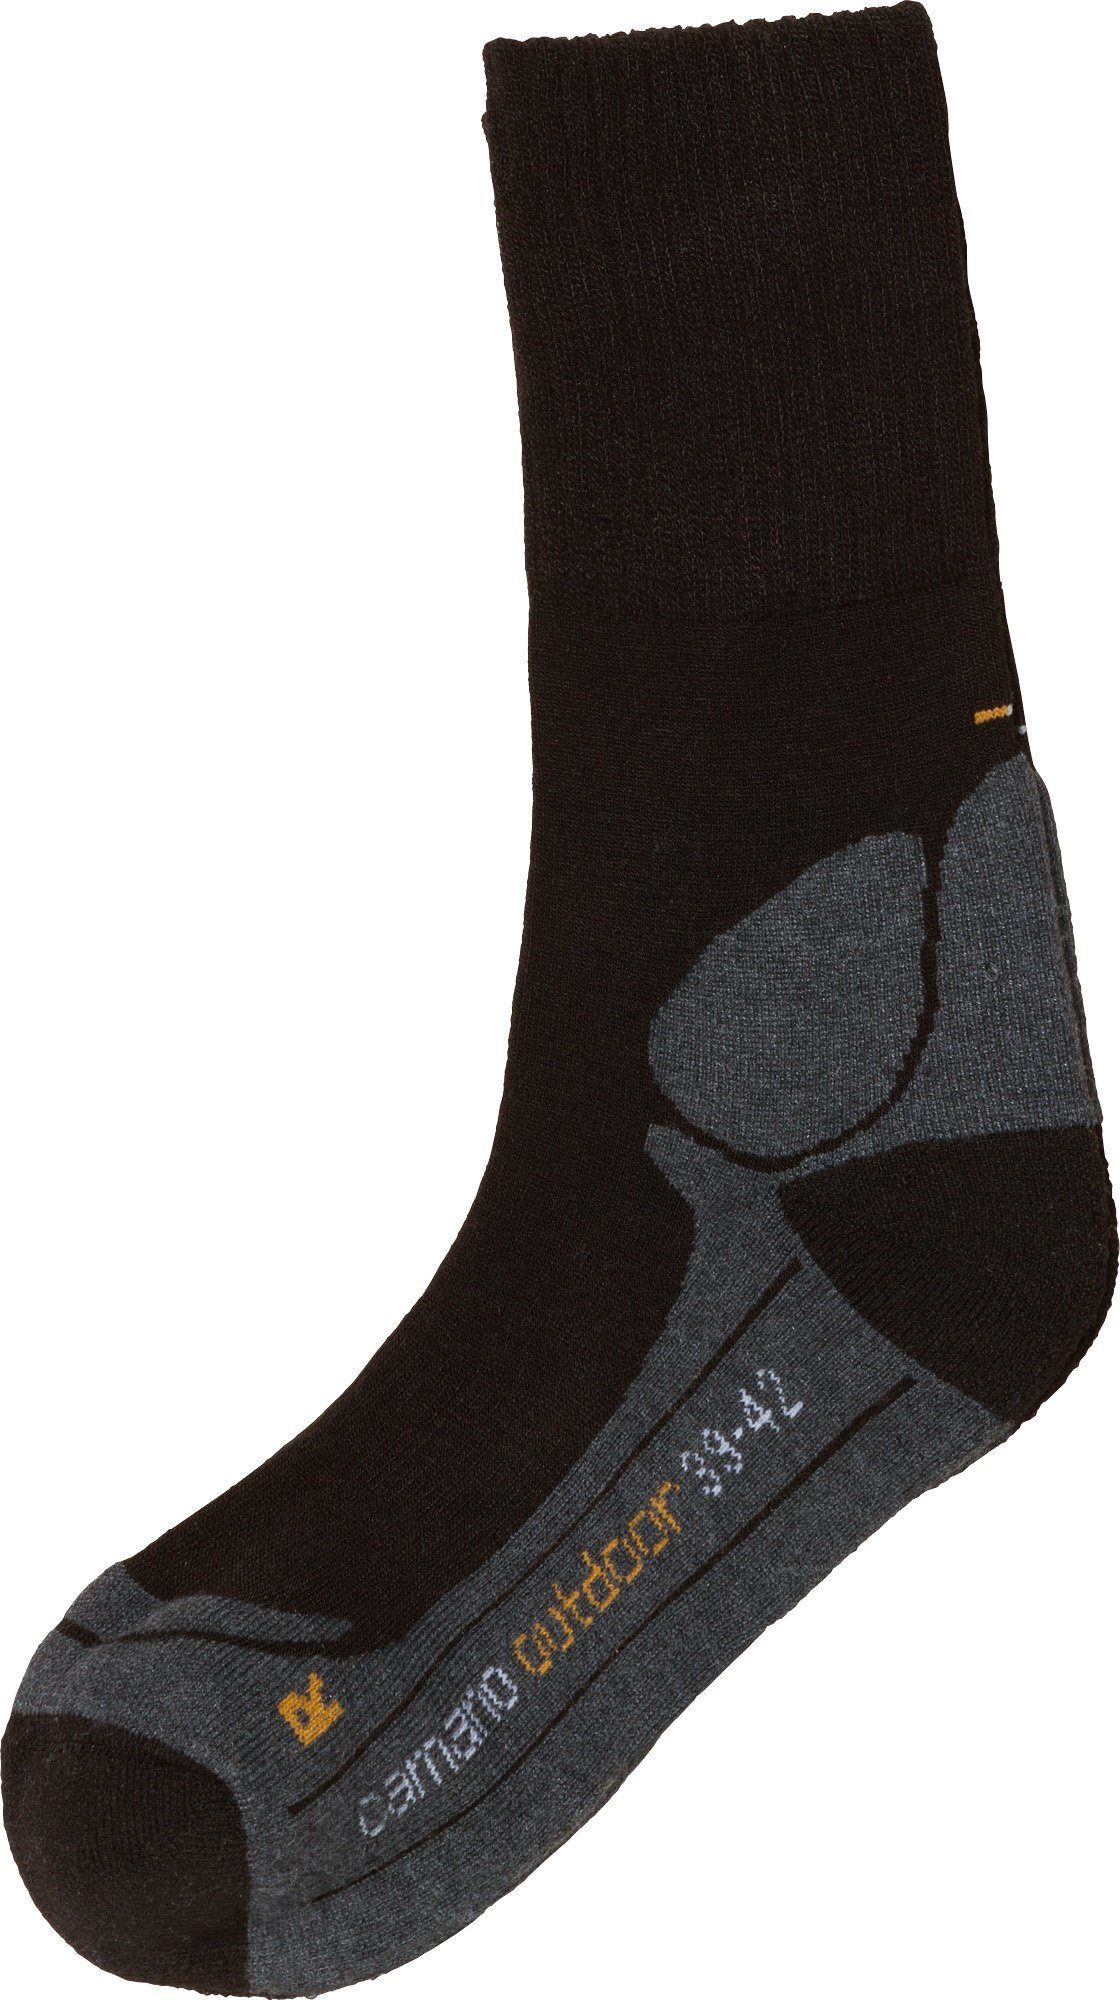 Socken Unisex-Outdoor-Socken schwarz 1 Paar Camano Uni